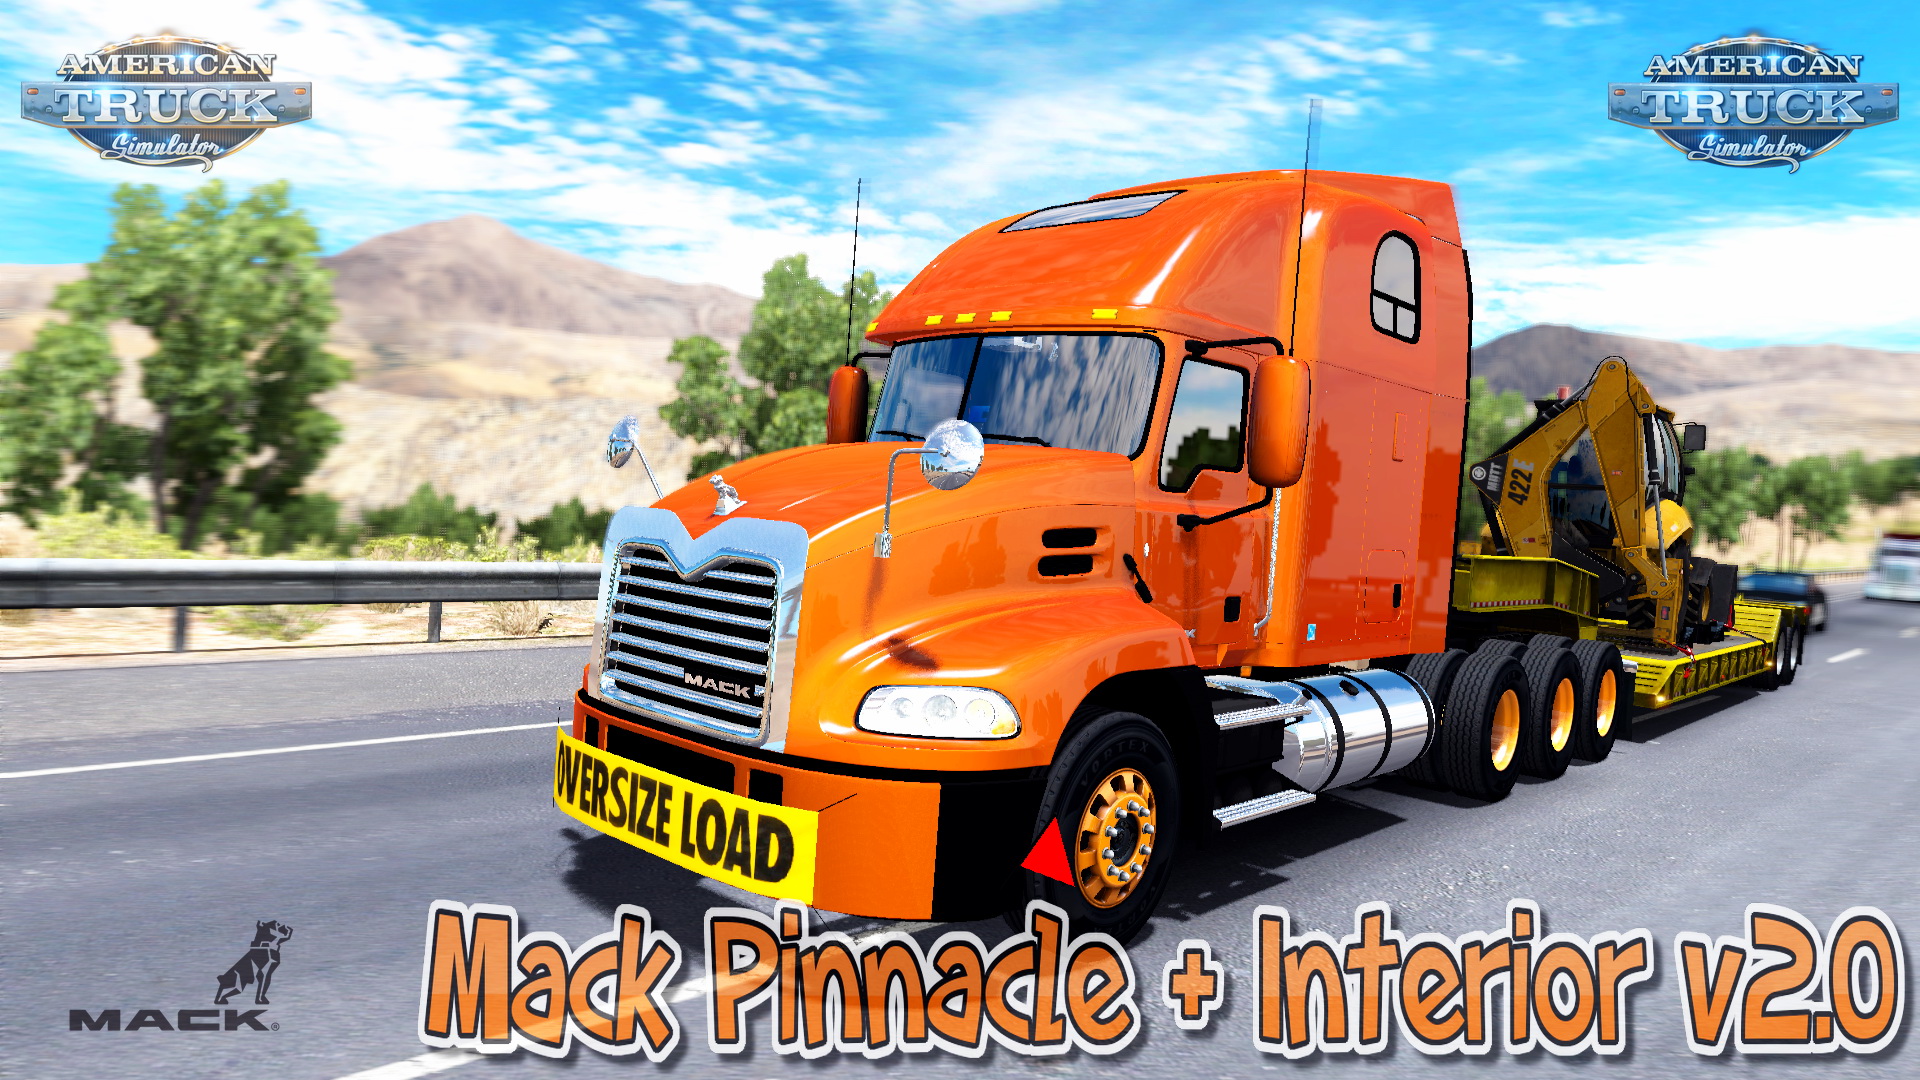 Mack Pinnacle + Interior v2.0 - American Truck Simulator